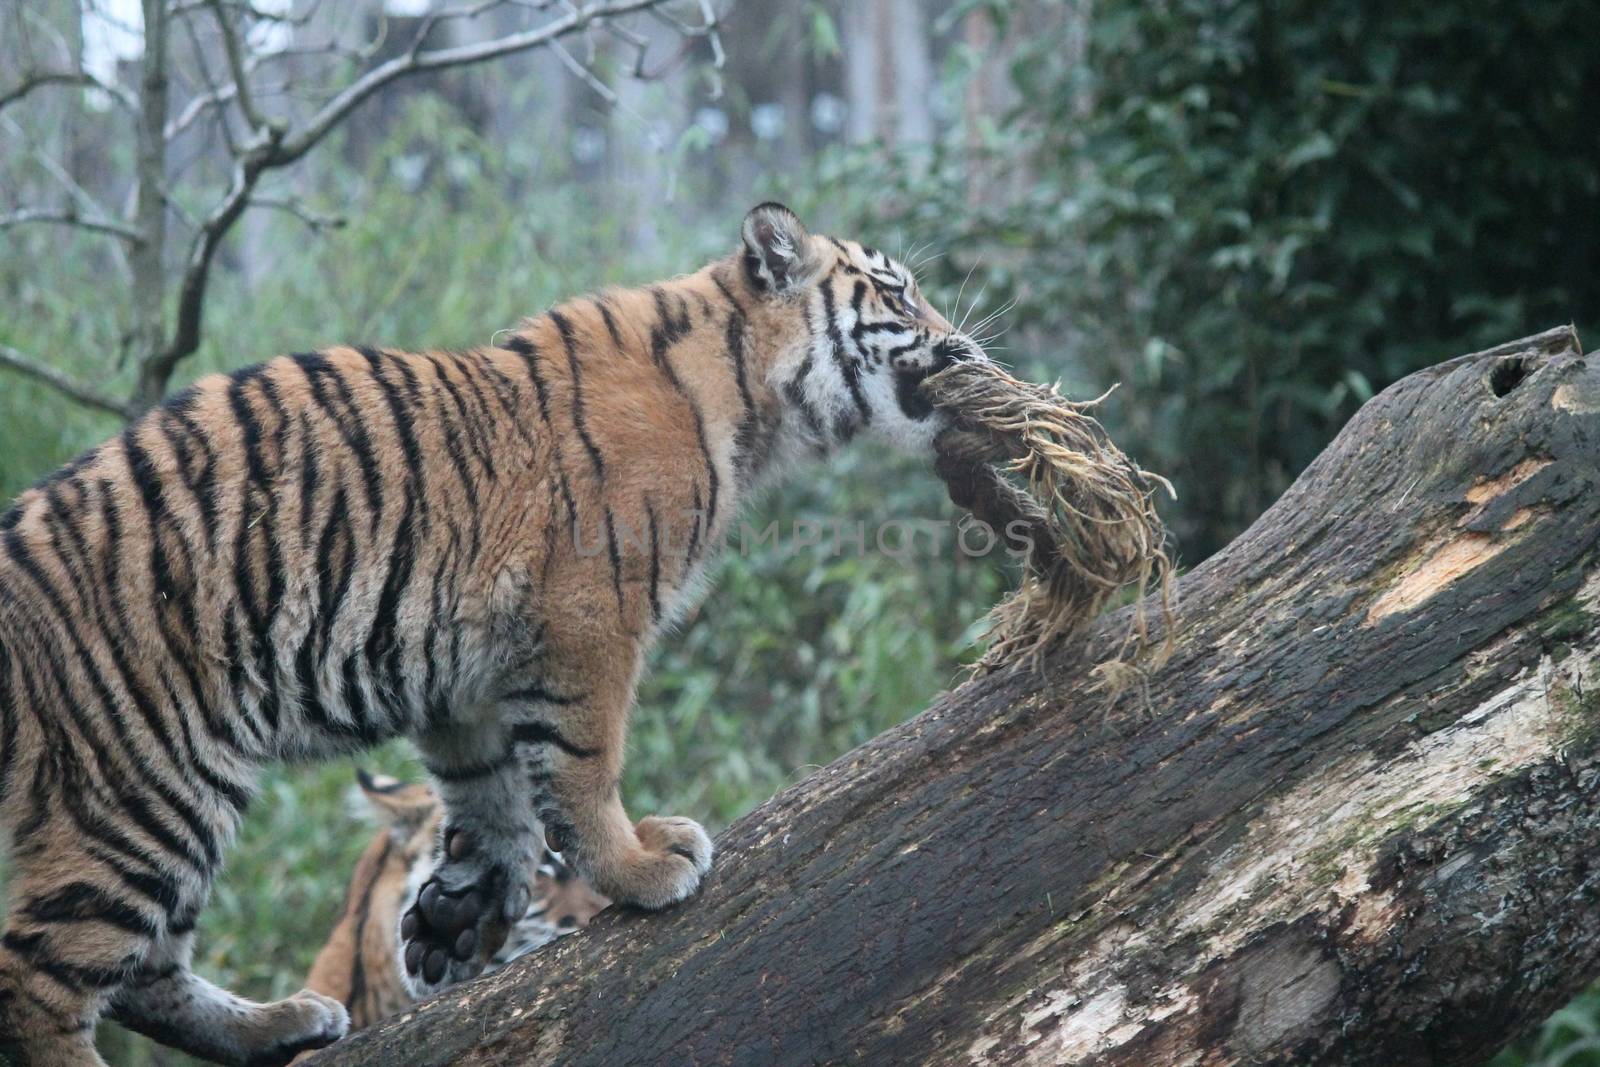 Sumatran Tiger rare and endagered tiger